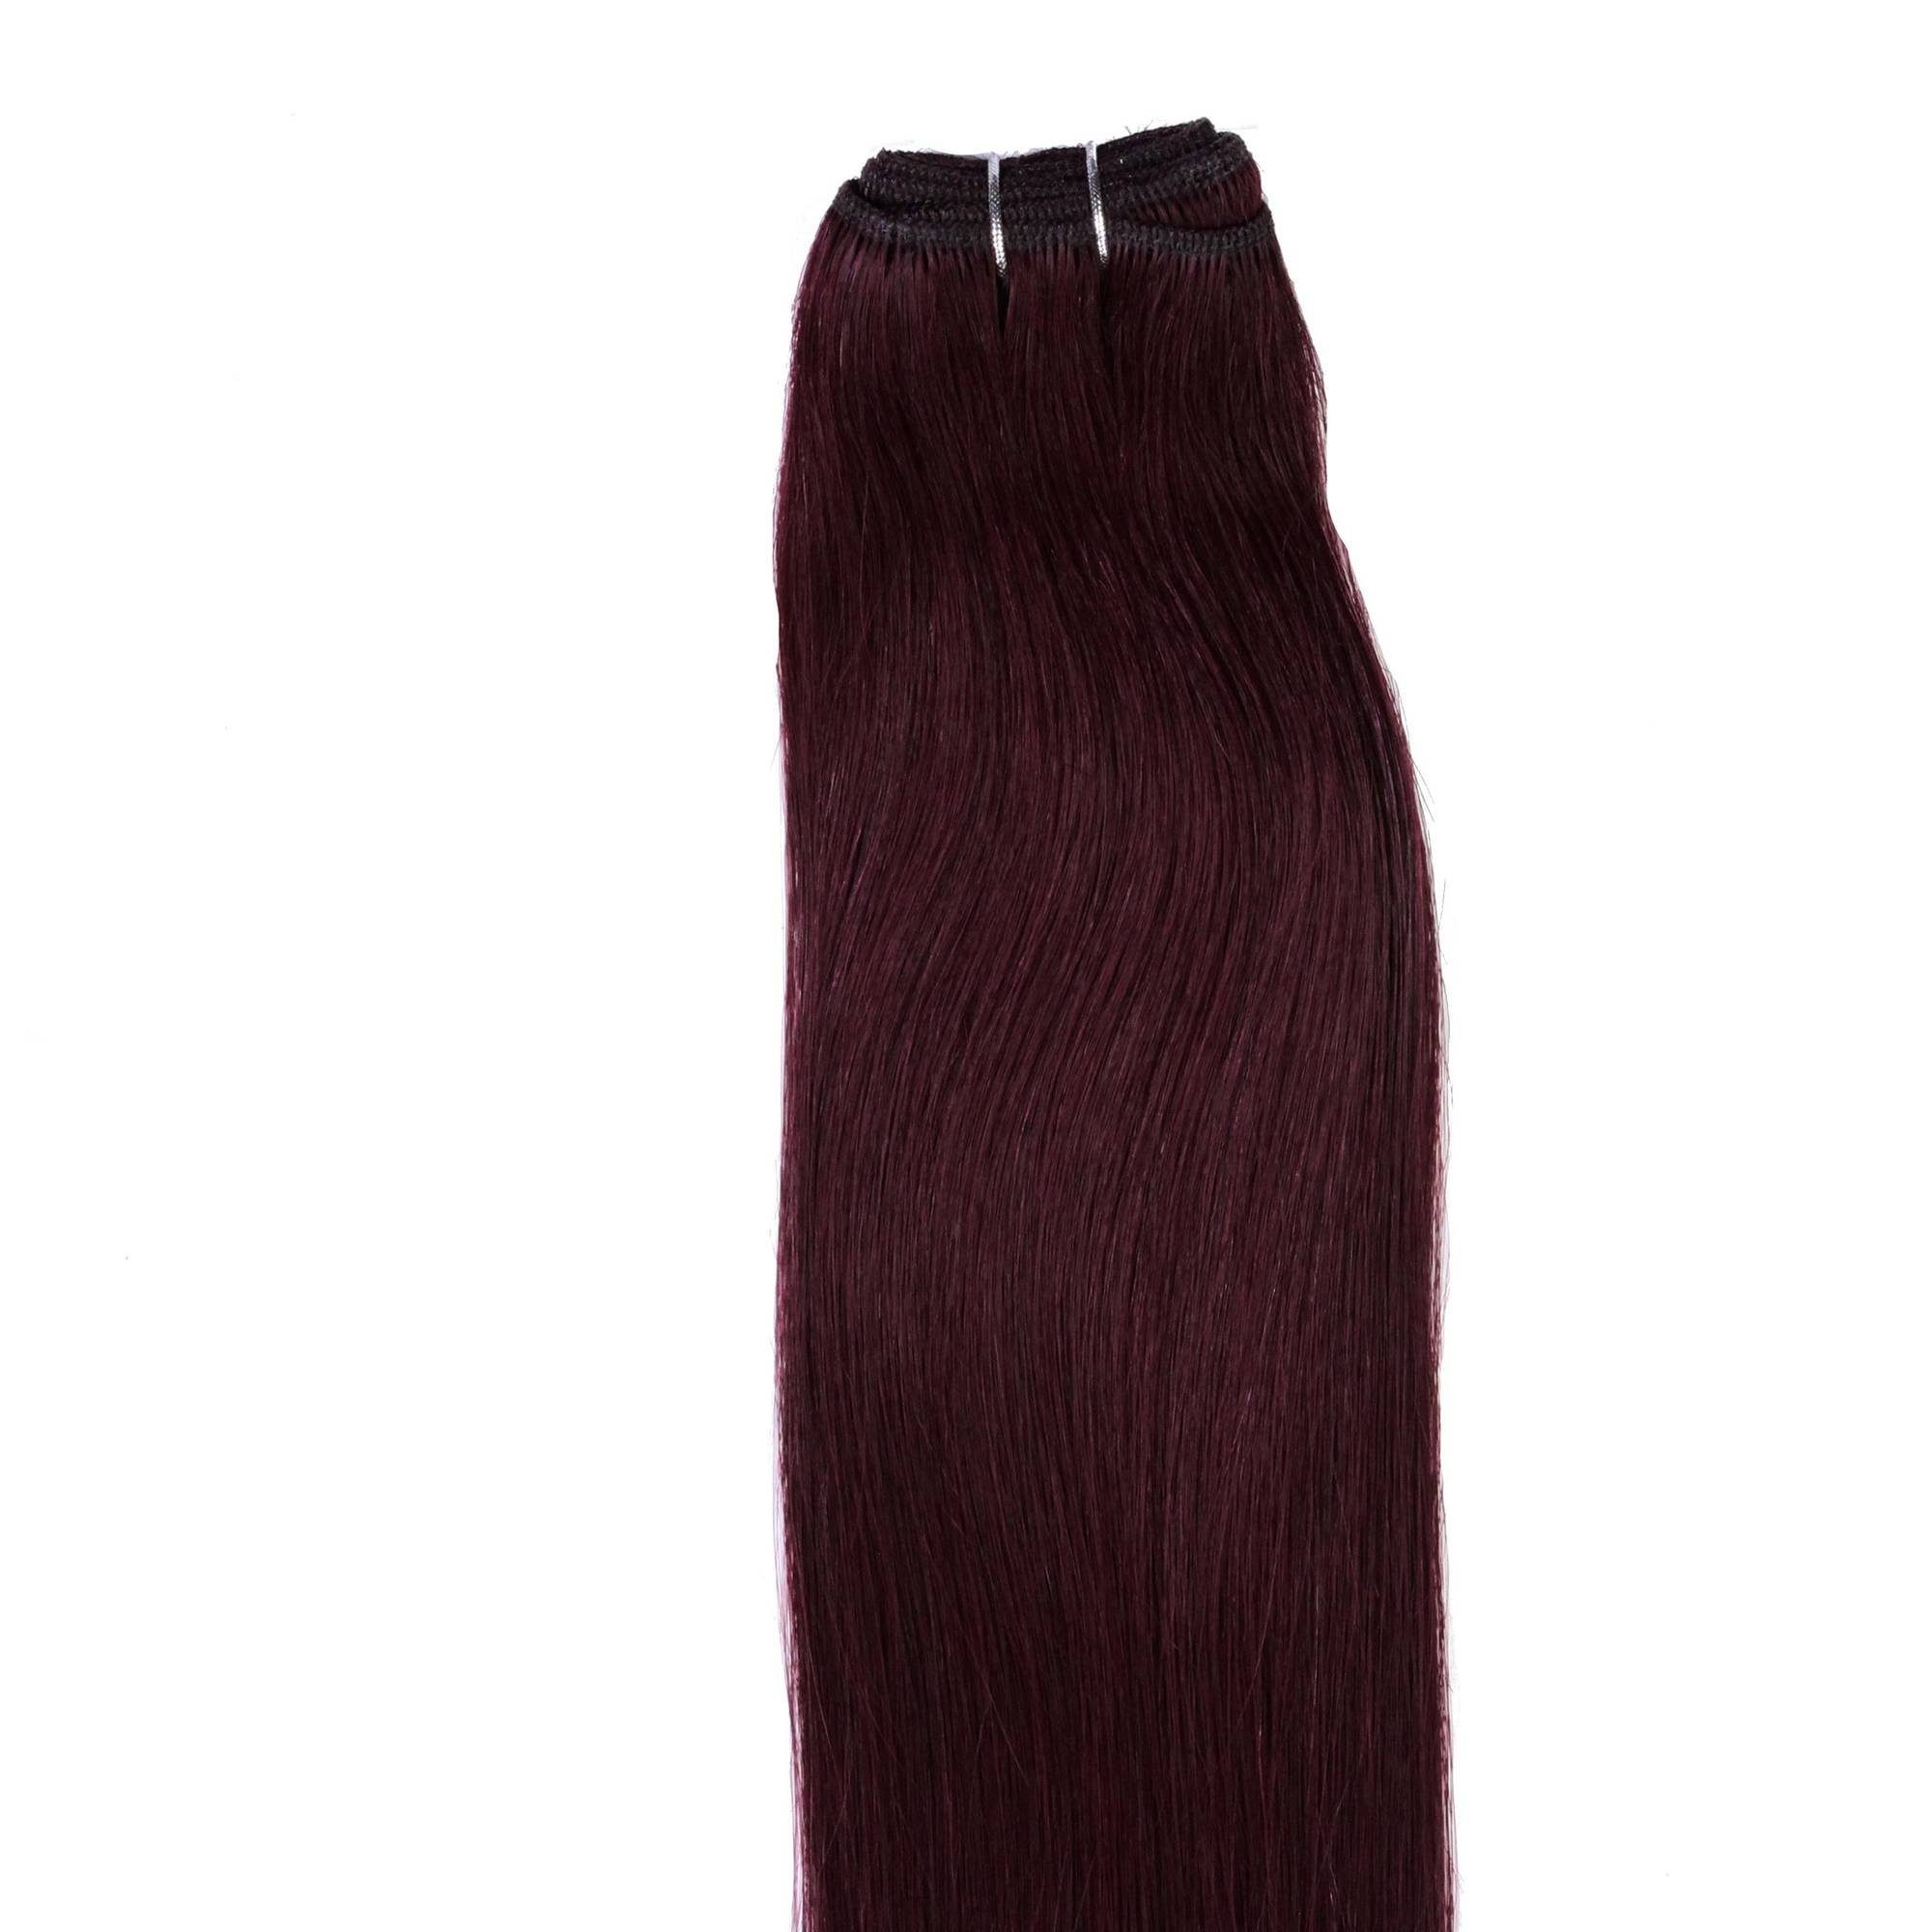 hair2heart Echthaar-Extension Glatte Echthaartresse #55/66 Hellbraun Violett 40cm